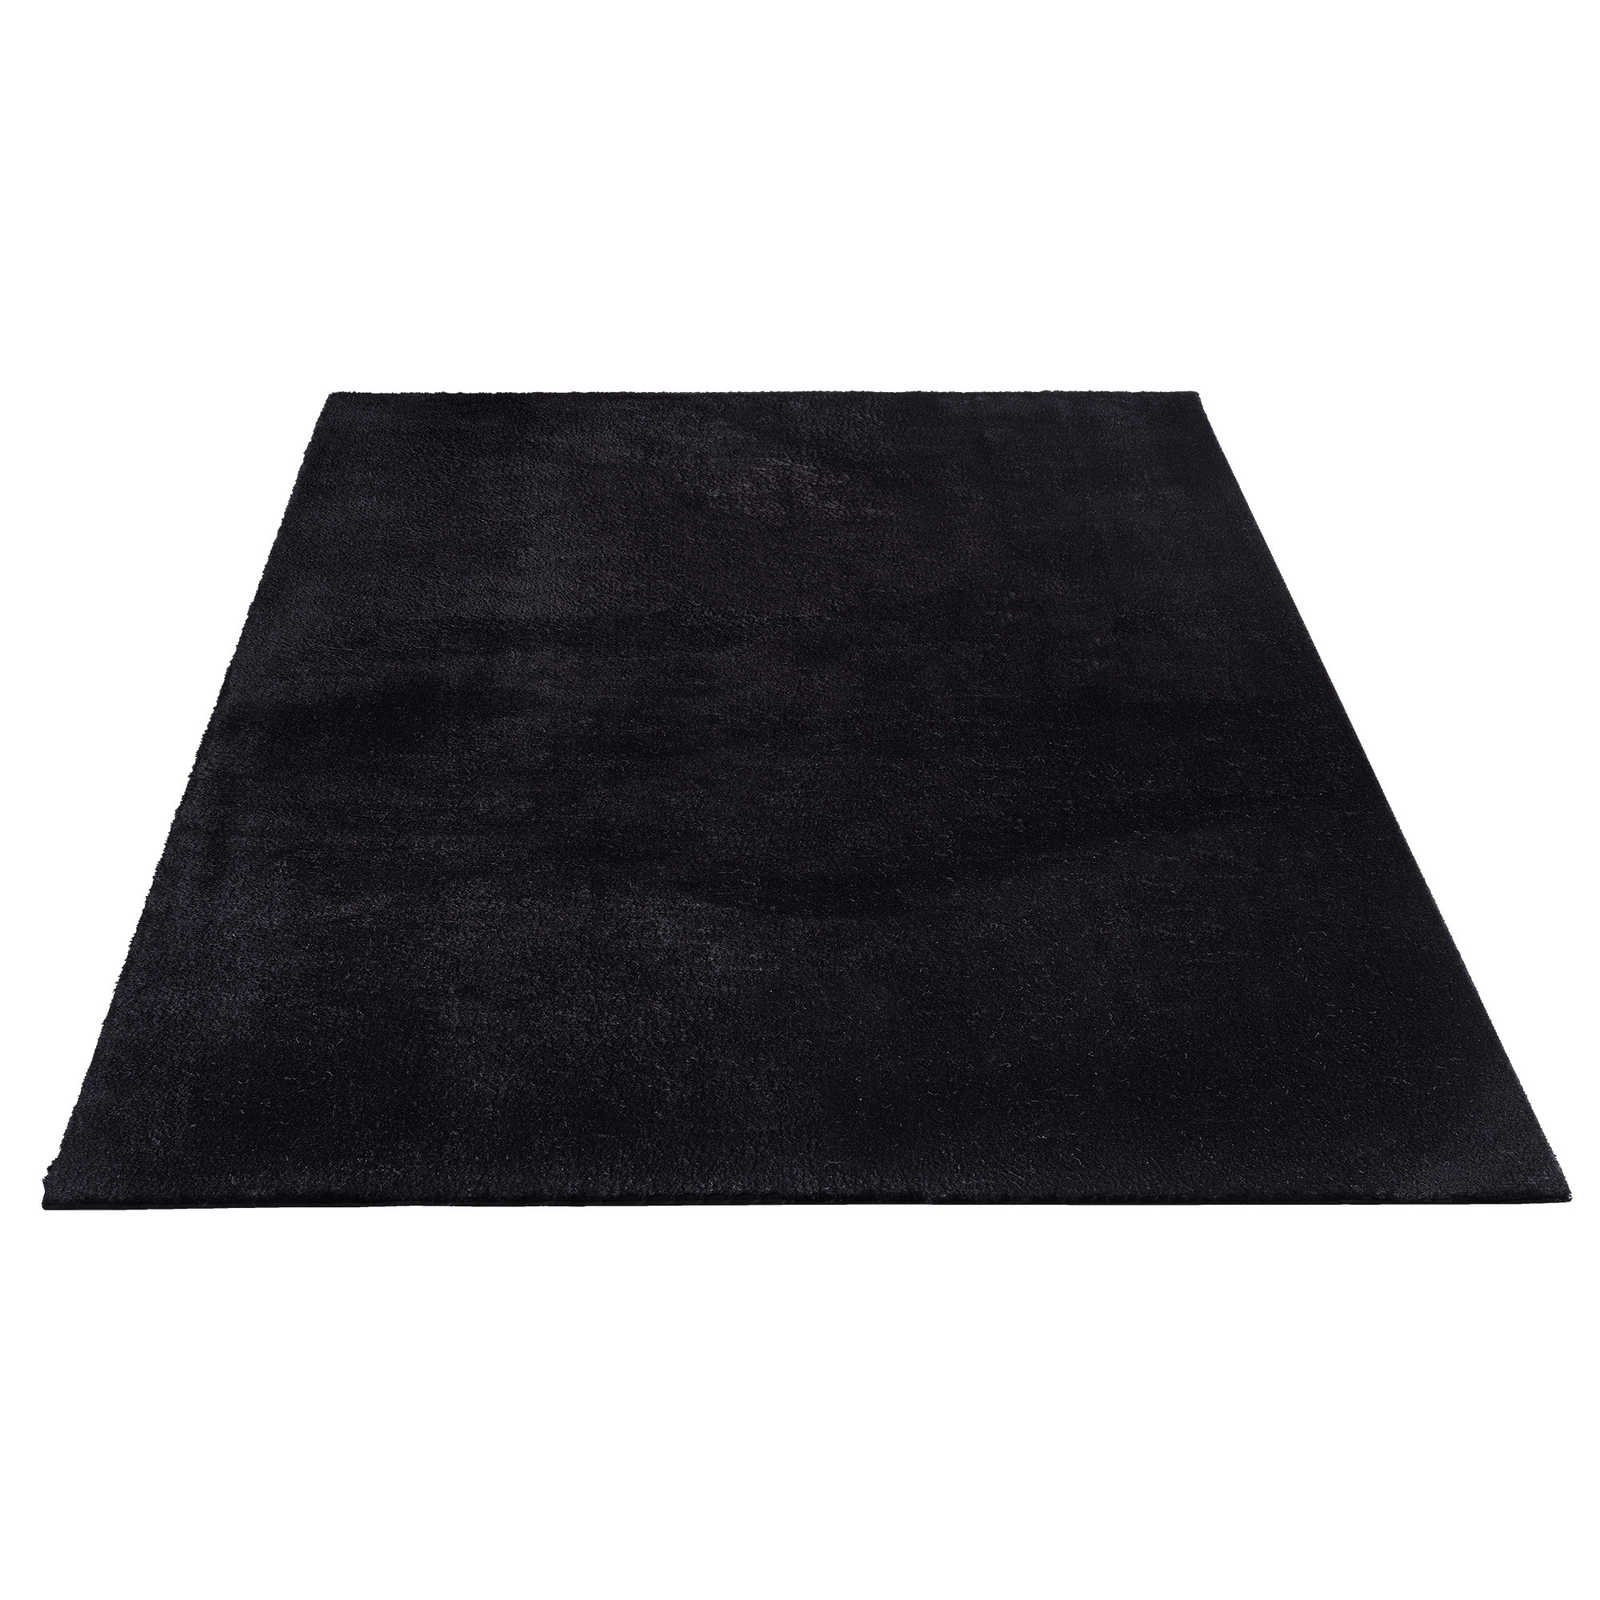 Fluweelzacht hoogpolig tapijt in zwart - 340 x 240 cm
